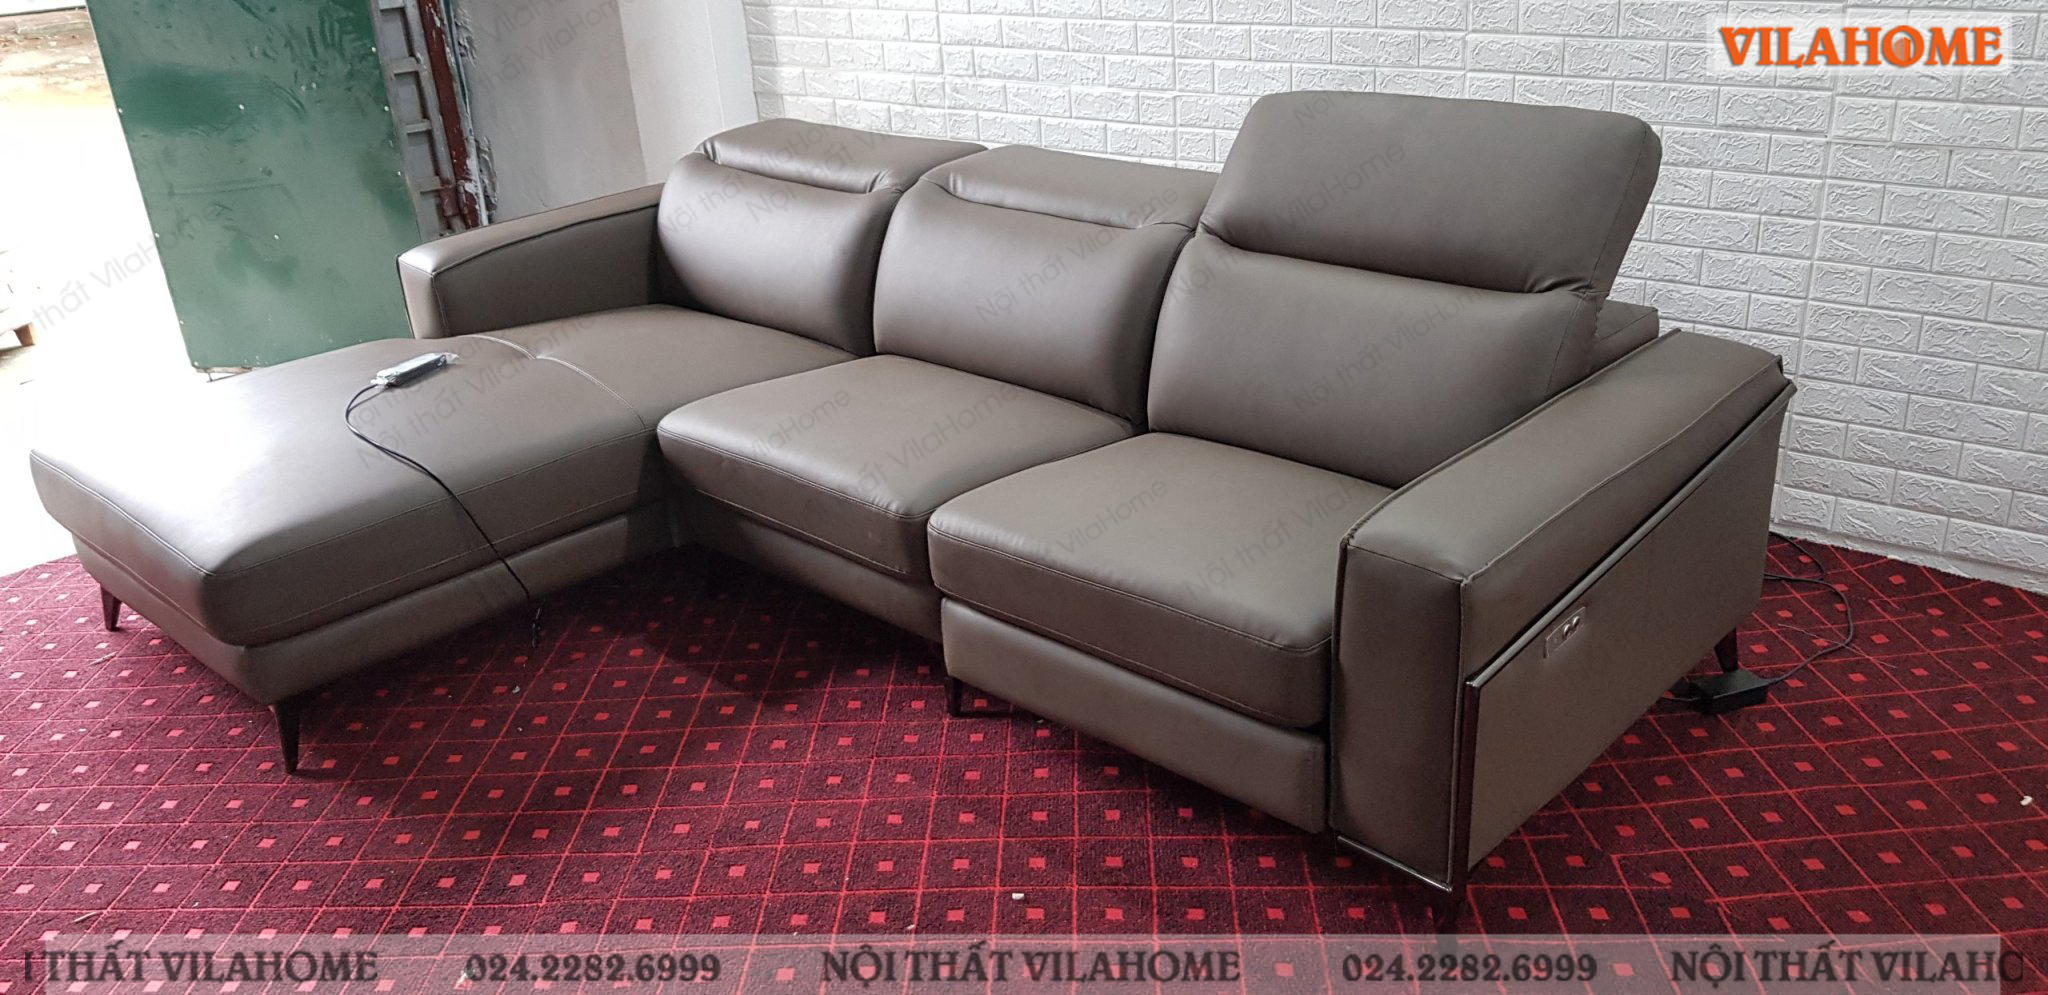 Sofa góc da tiện nghi đa năng VilaHome cho khách hàng ở Từ Sơn, Bắc Ninh.